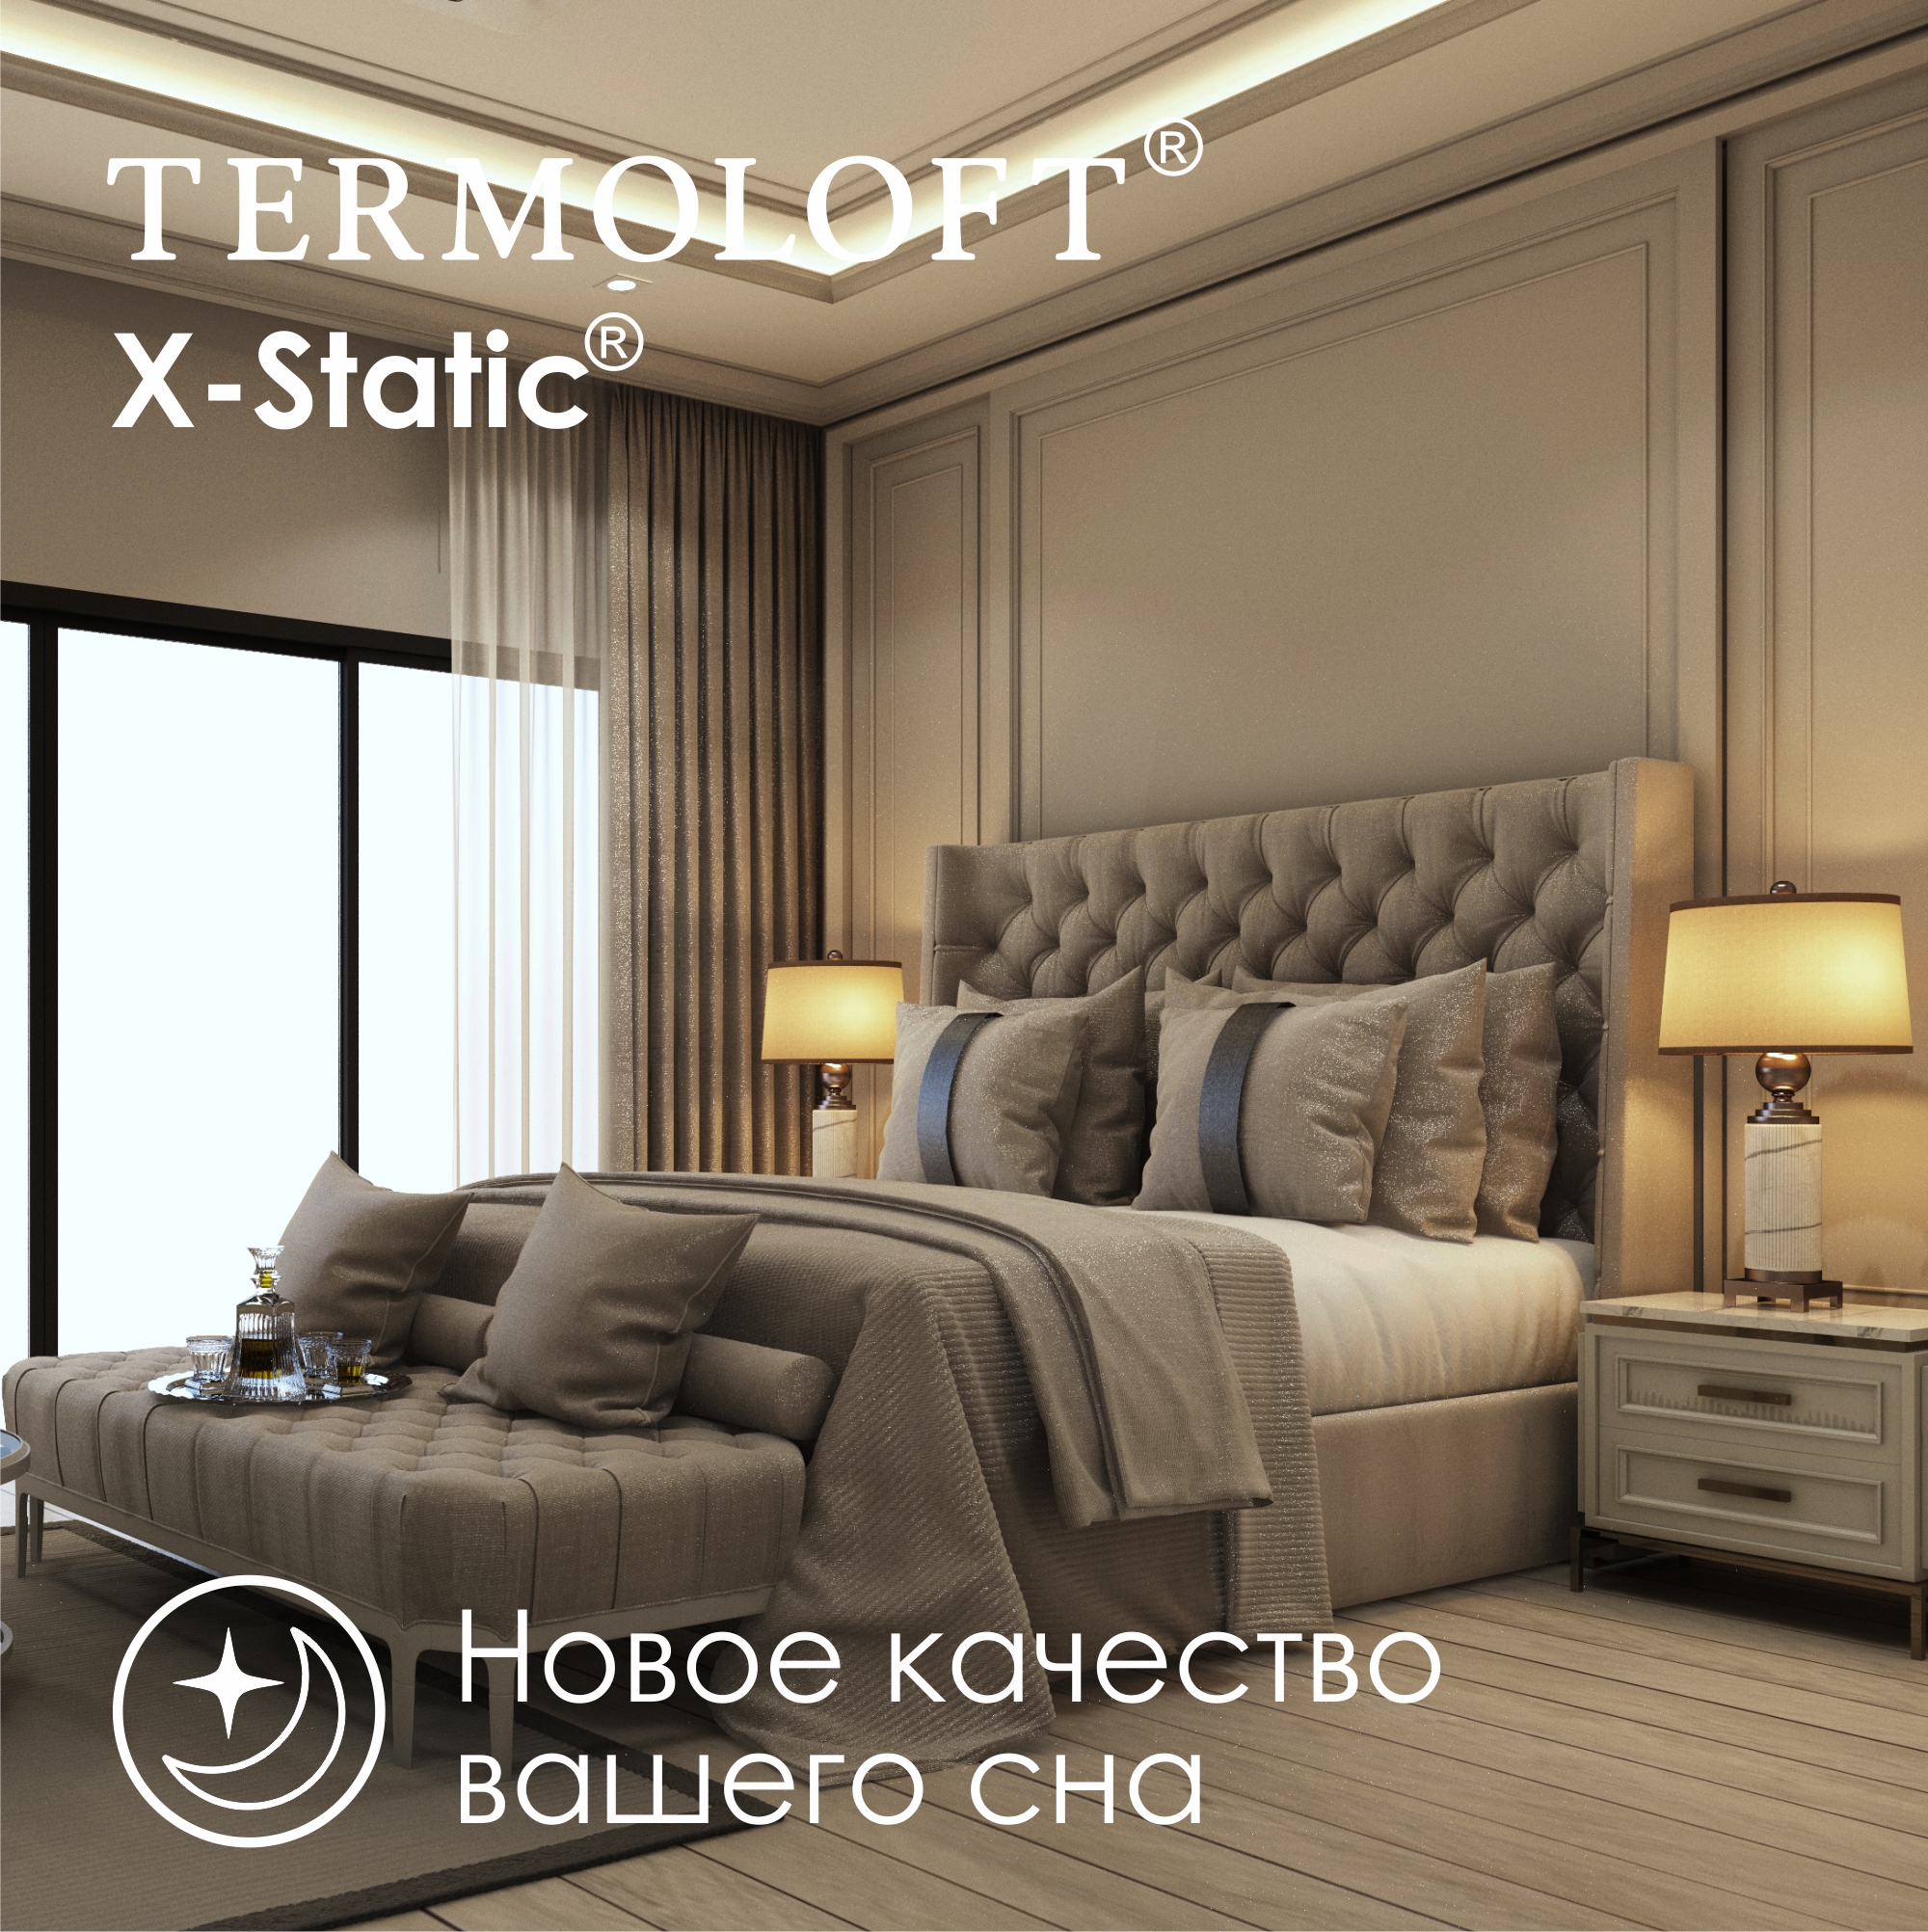 Наматрасник Termoloft X-Static с волокнами серебра 140х200 - фото 4